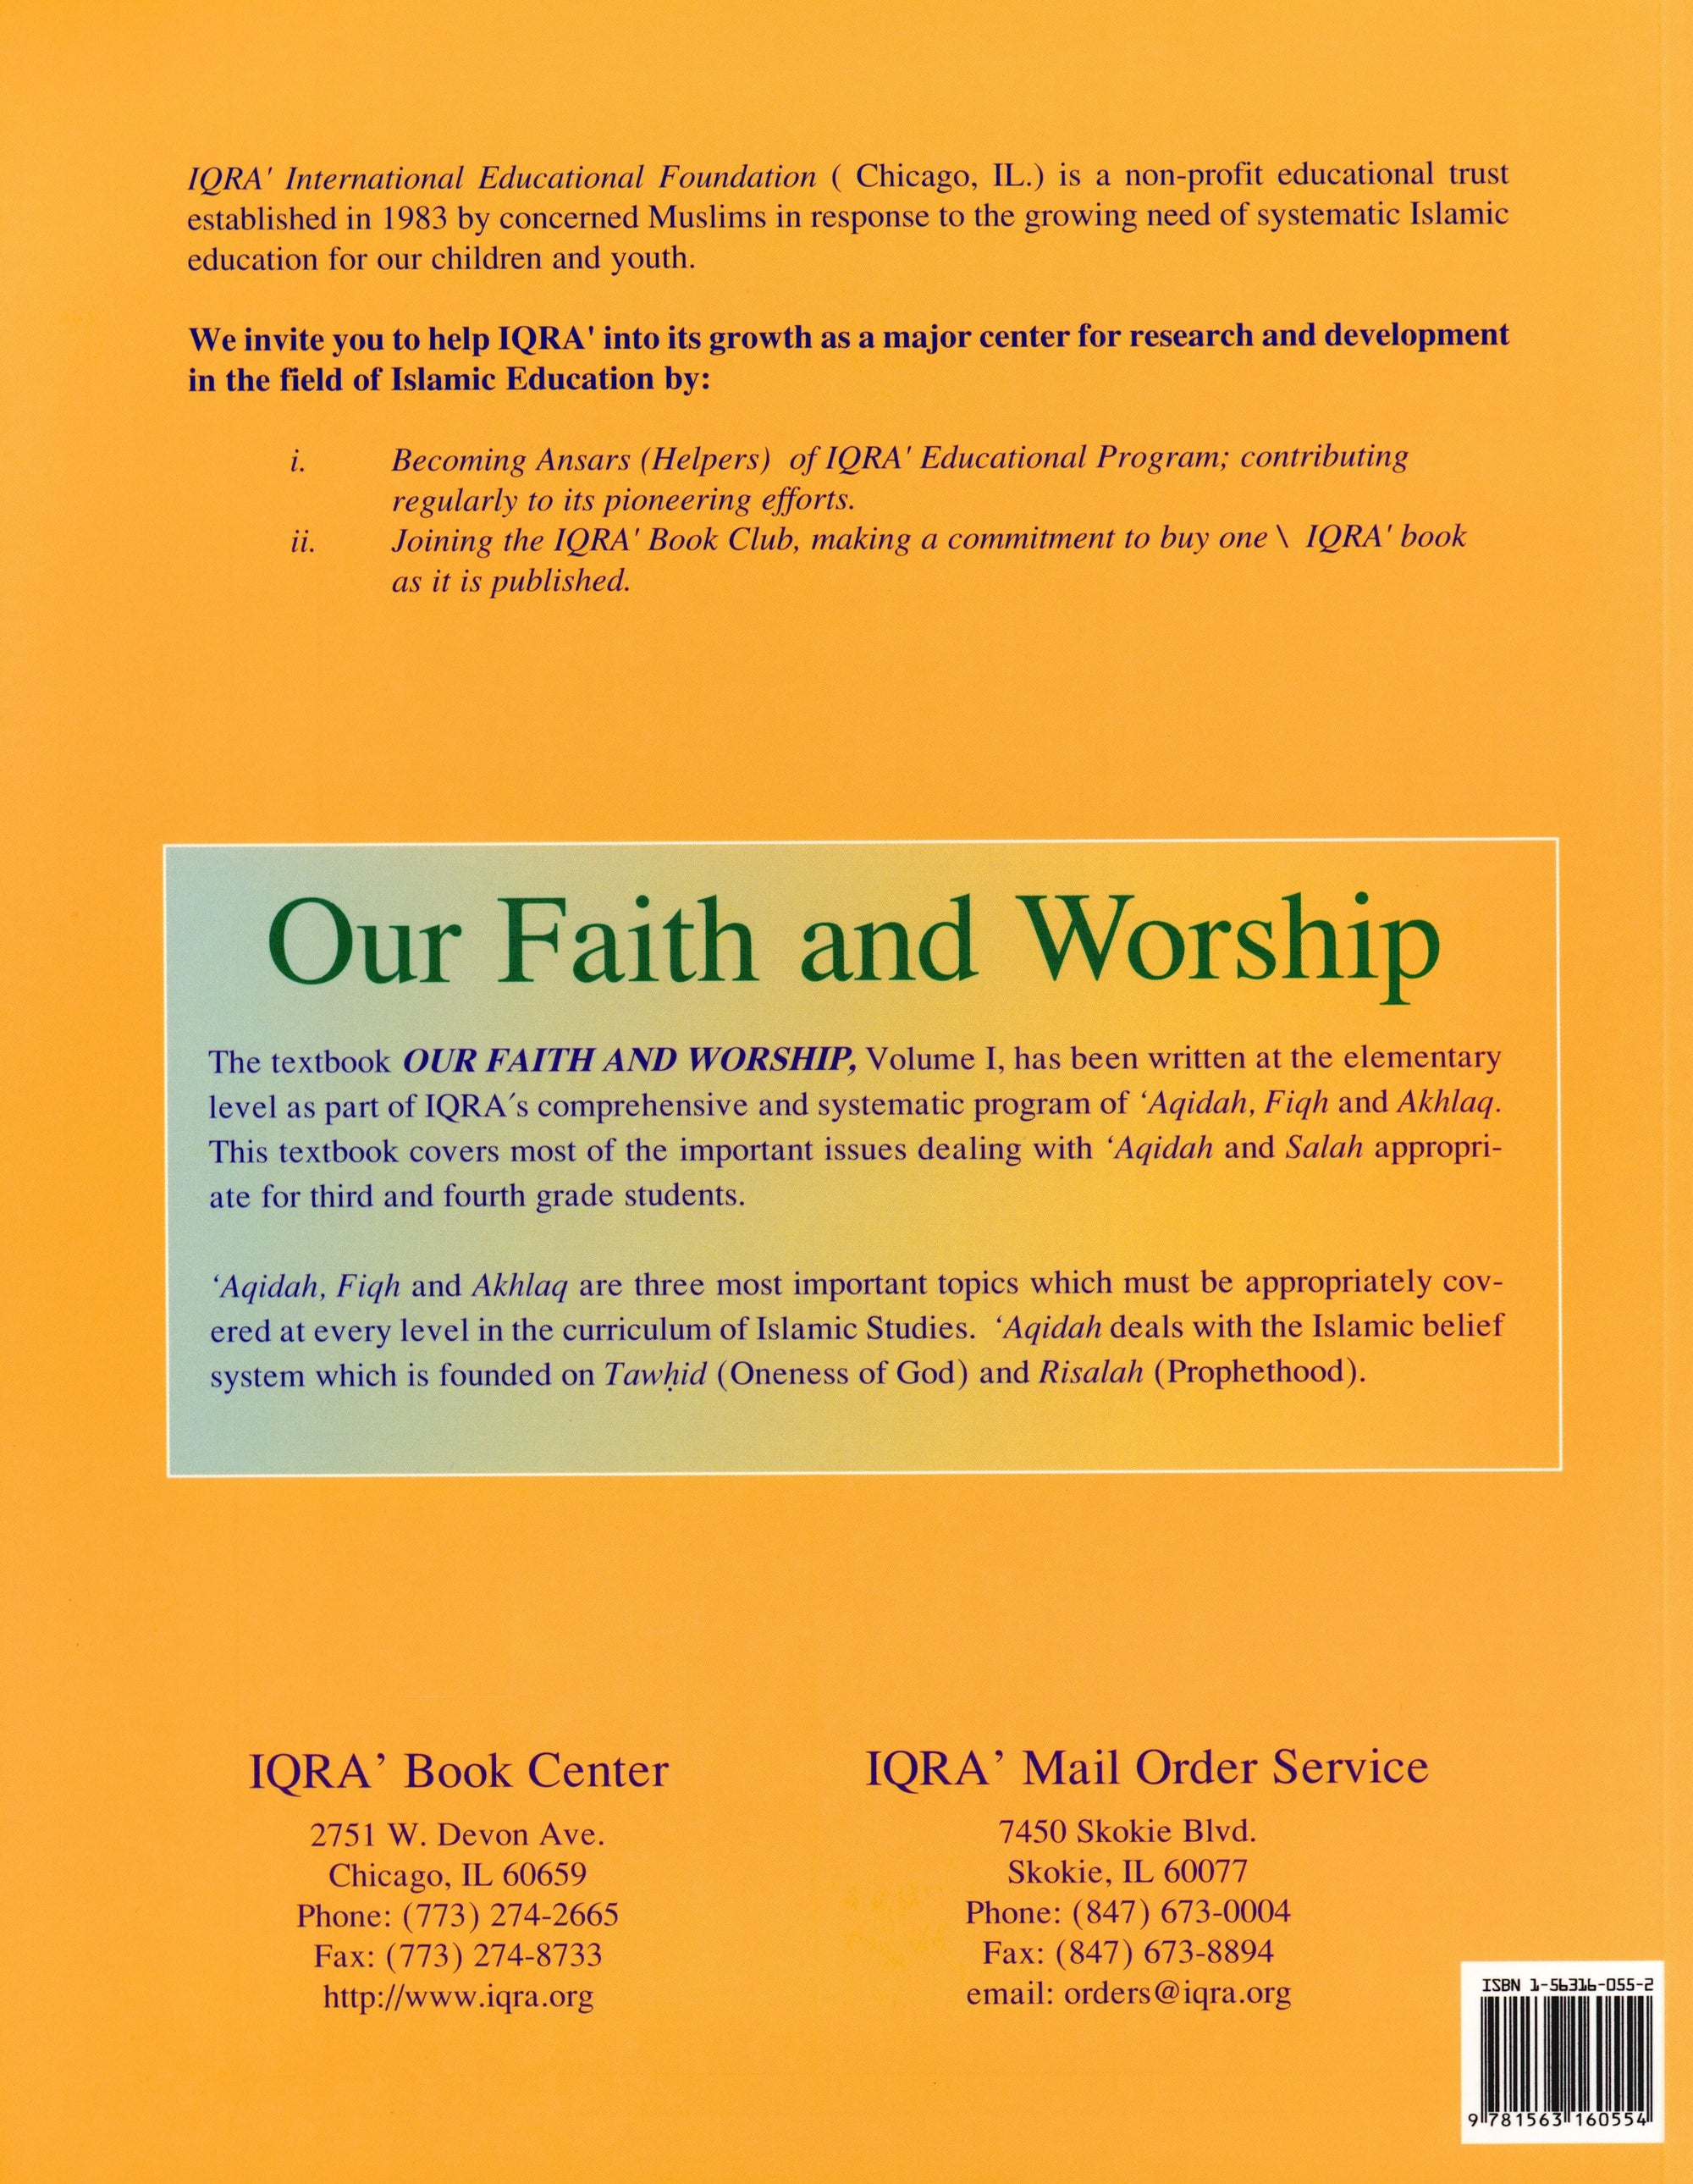 Our Faith and Worship Textbook Volume 1